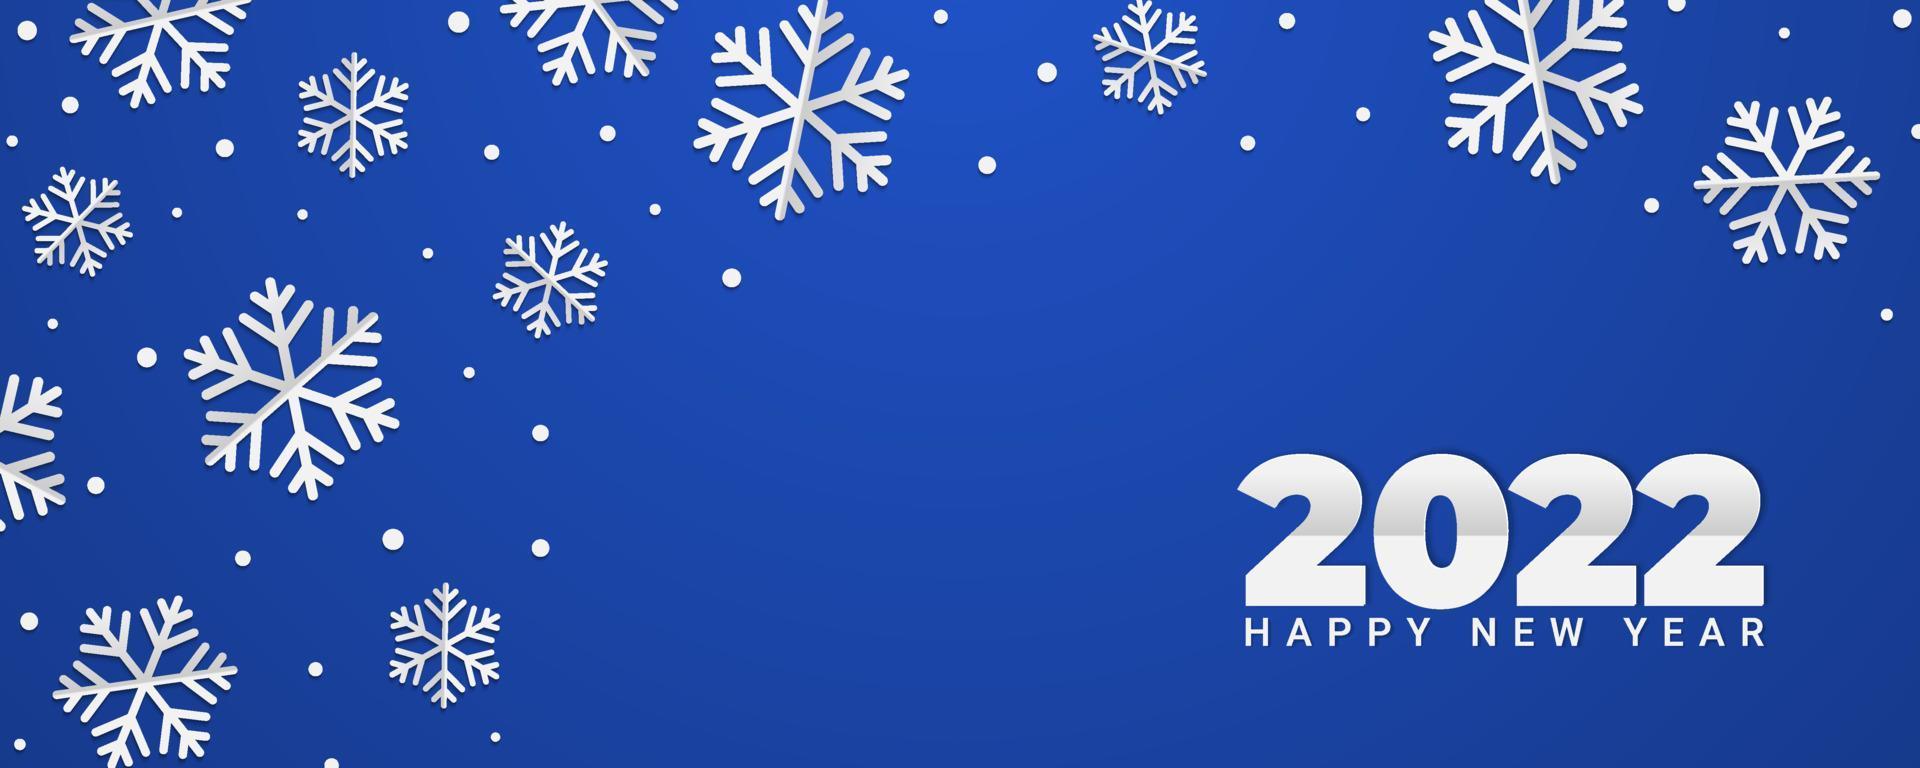 2022 gott nytt år bakgrund med snöflingor. vinter banner illustration på blå bakgrund vektor